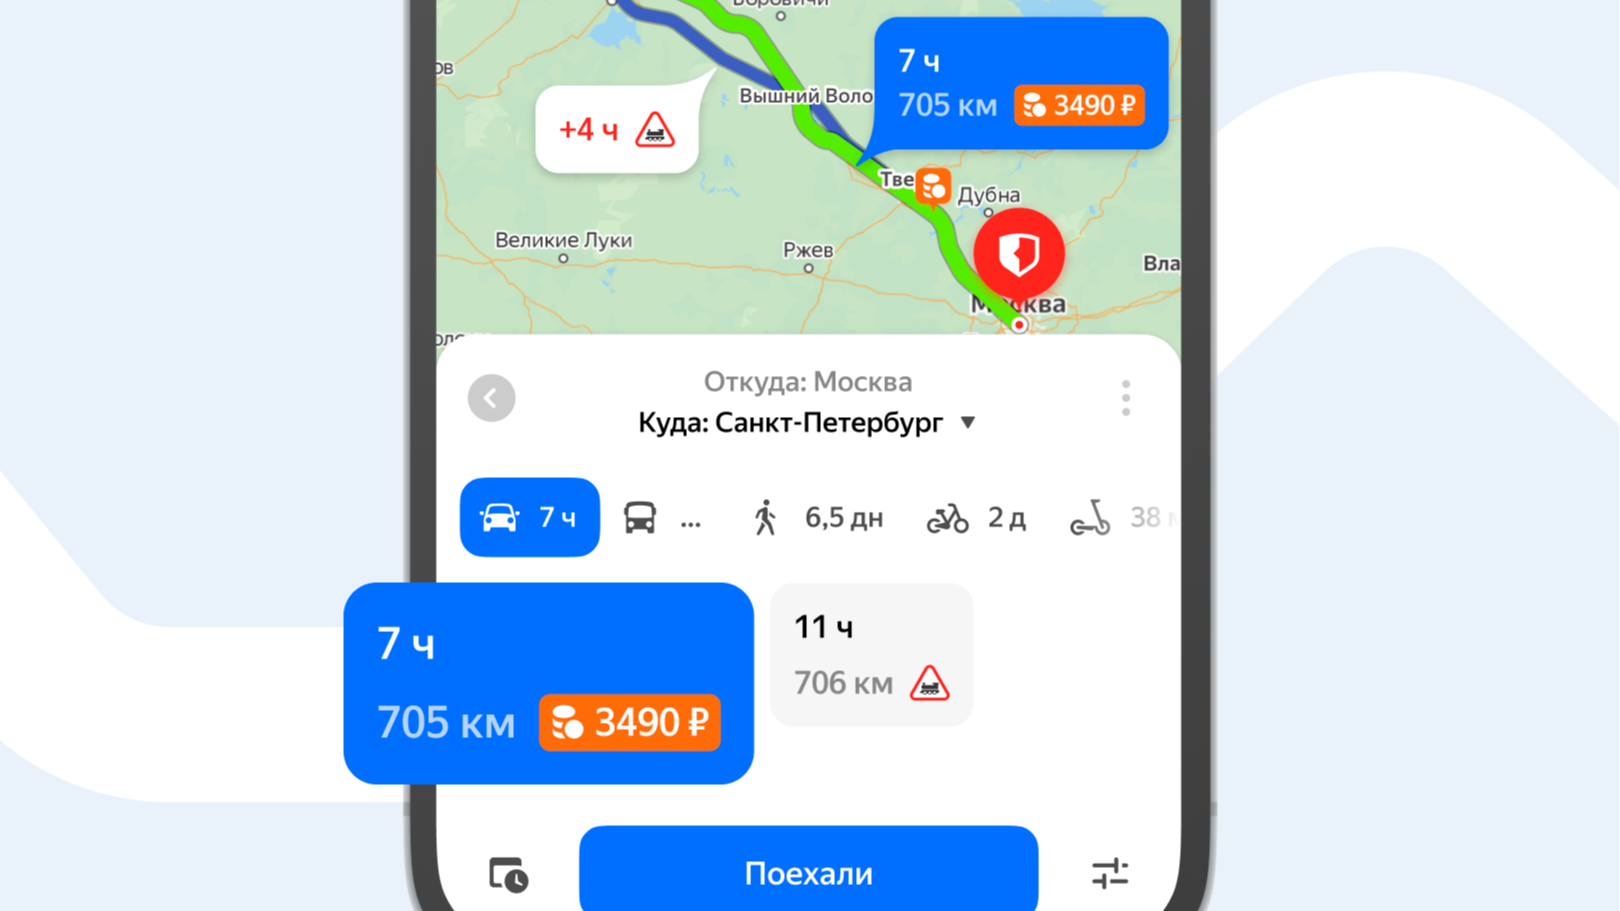 Яндекс Карты теперь показывают стоимость проезда по платным автодорогам